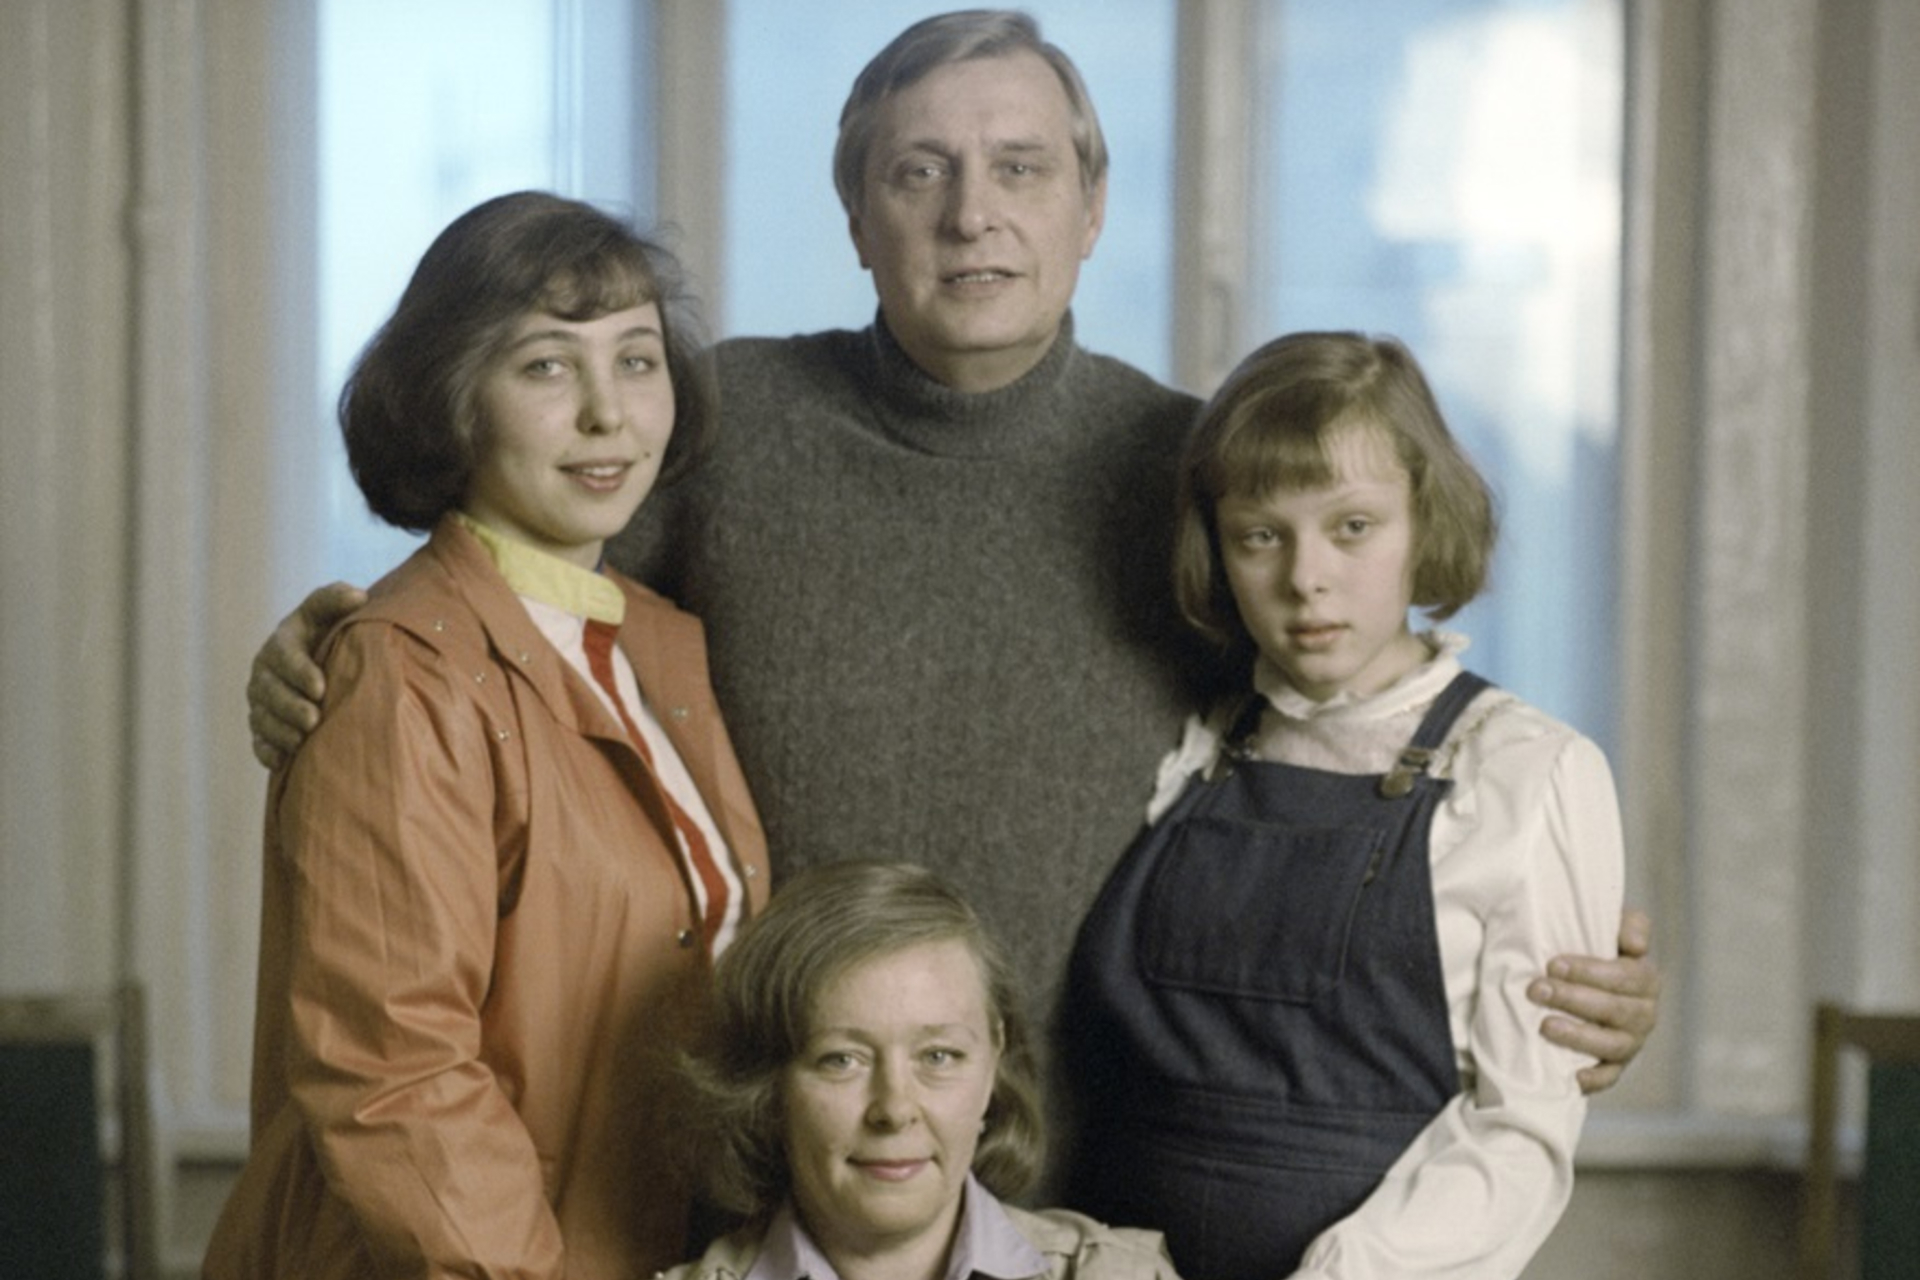 Галина Мшанская, его вторая жена Олега Басилашвили и их дочери